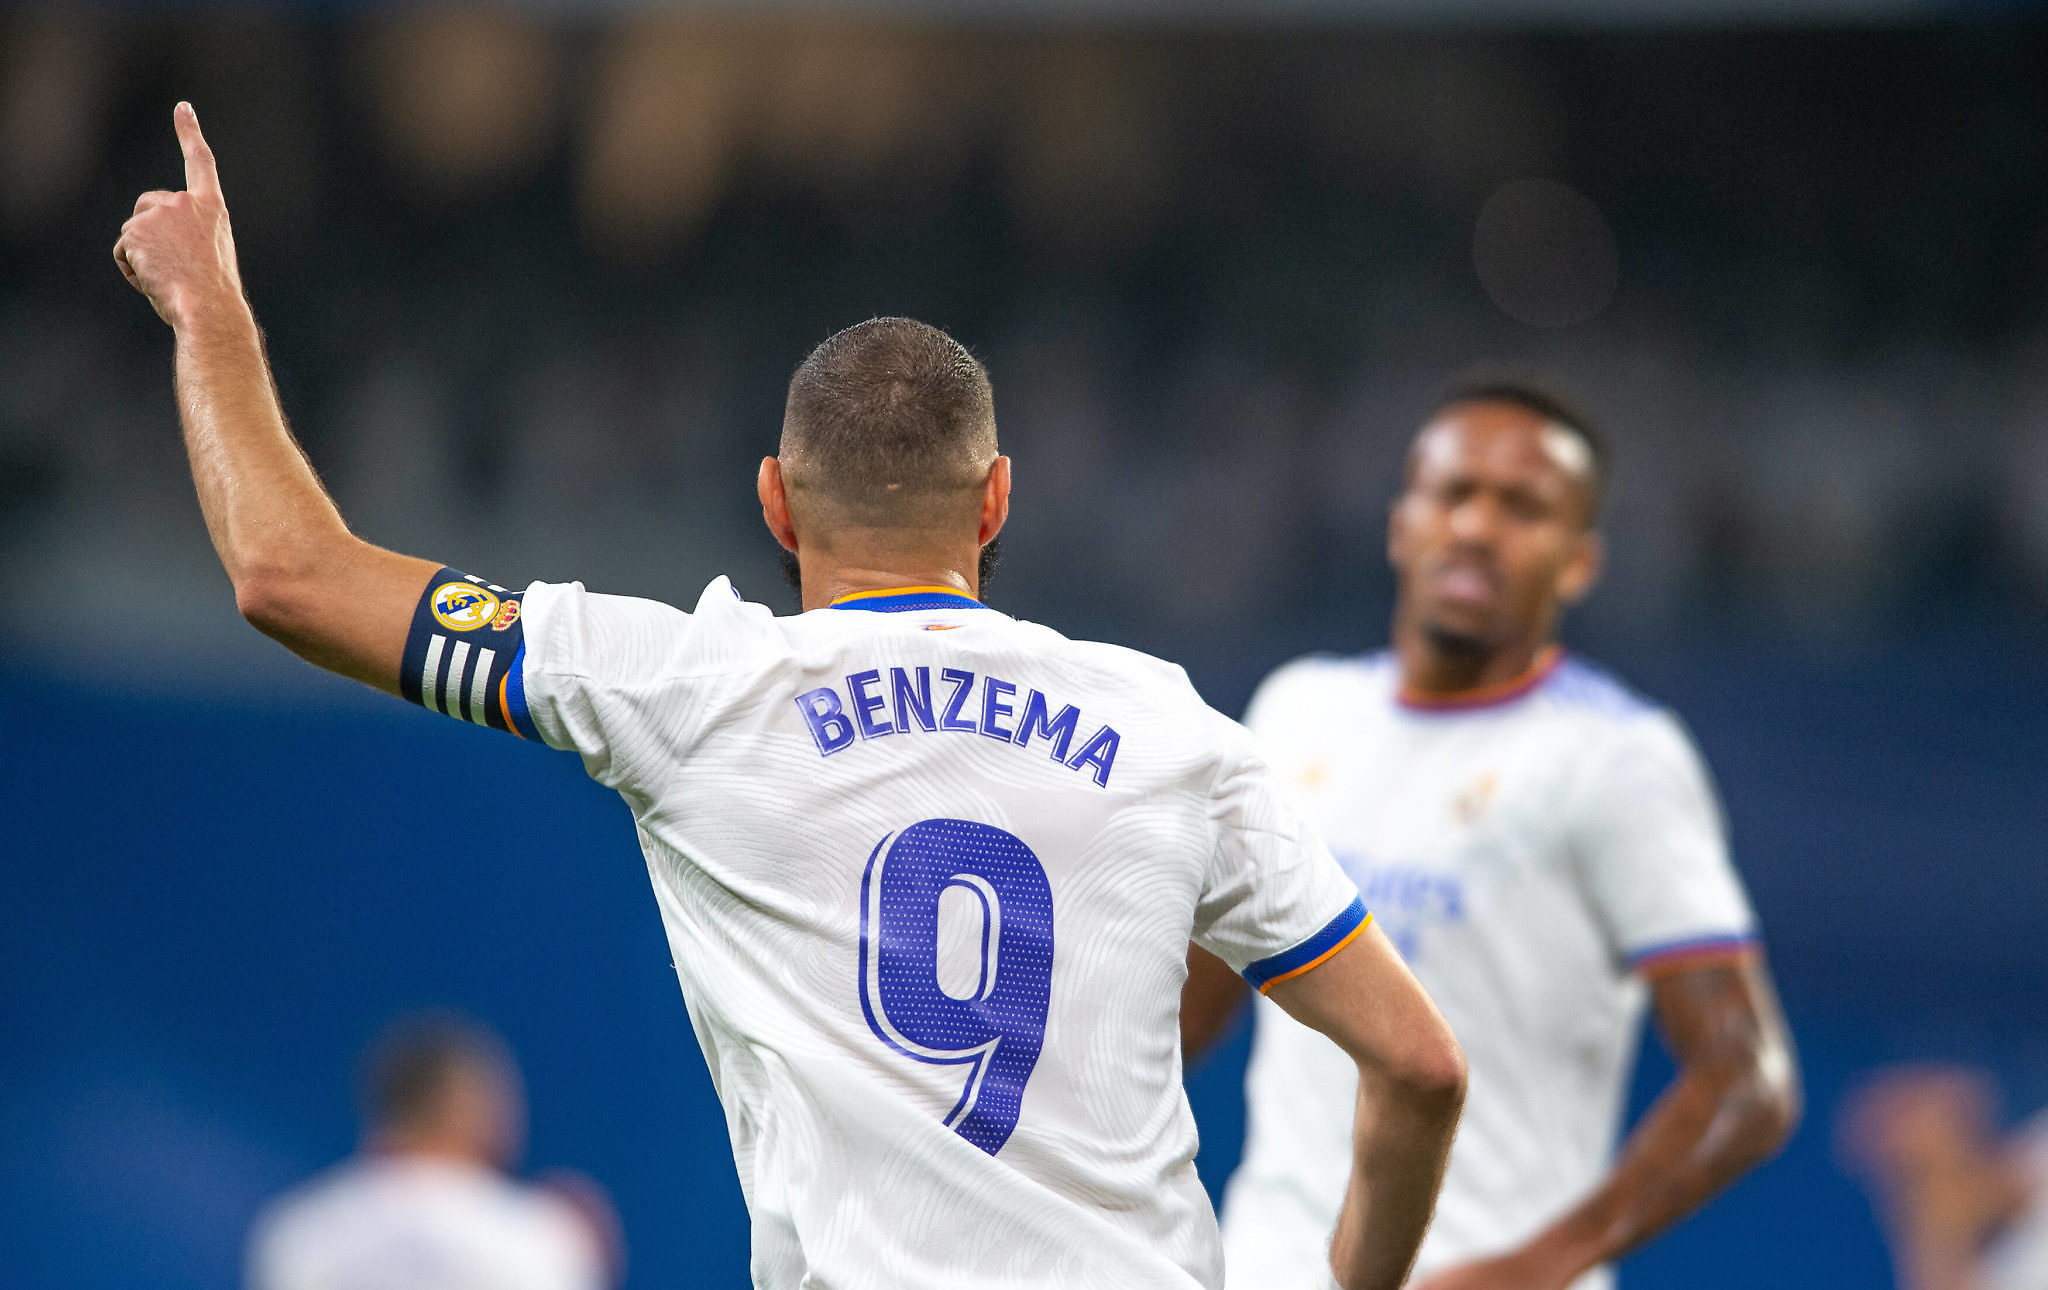 Crónica Real | La alegría vuelve al Bernabéu (5-2)